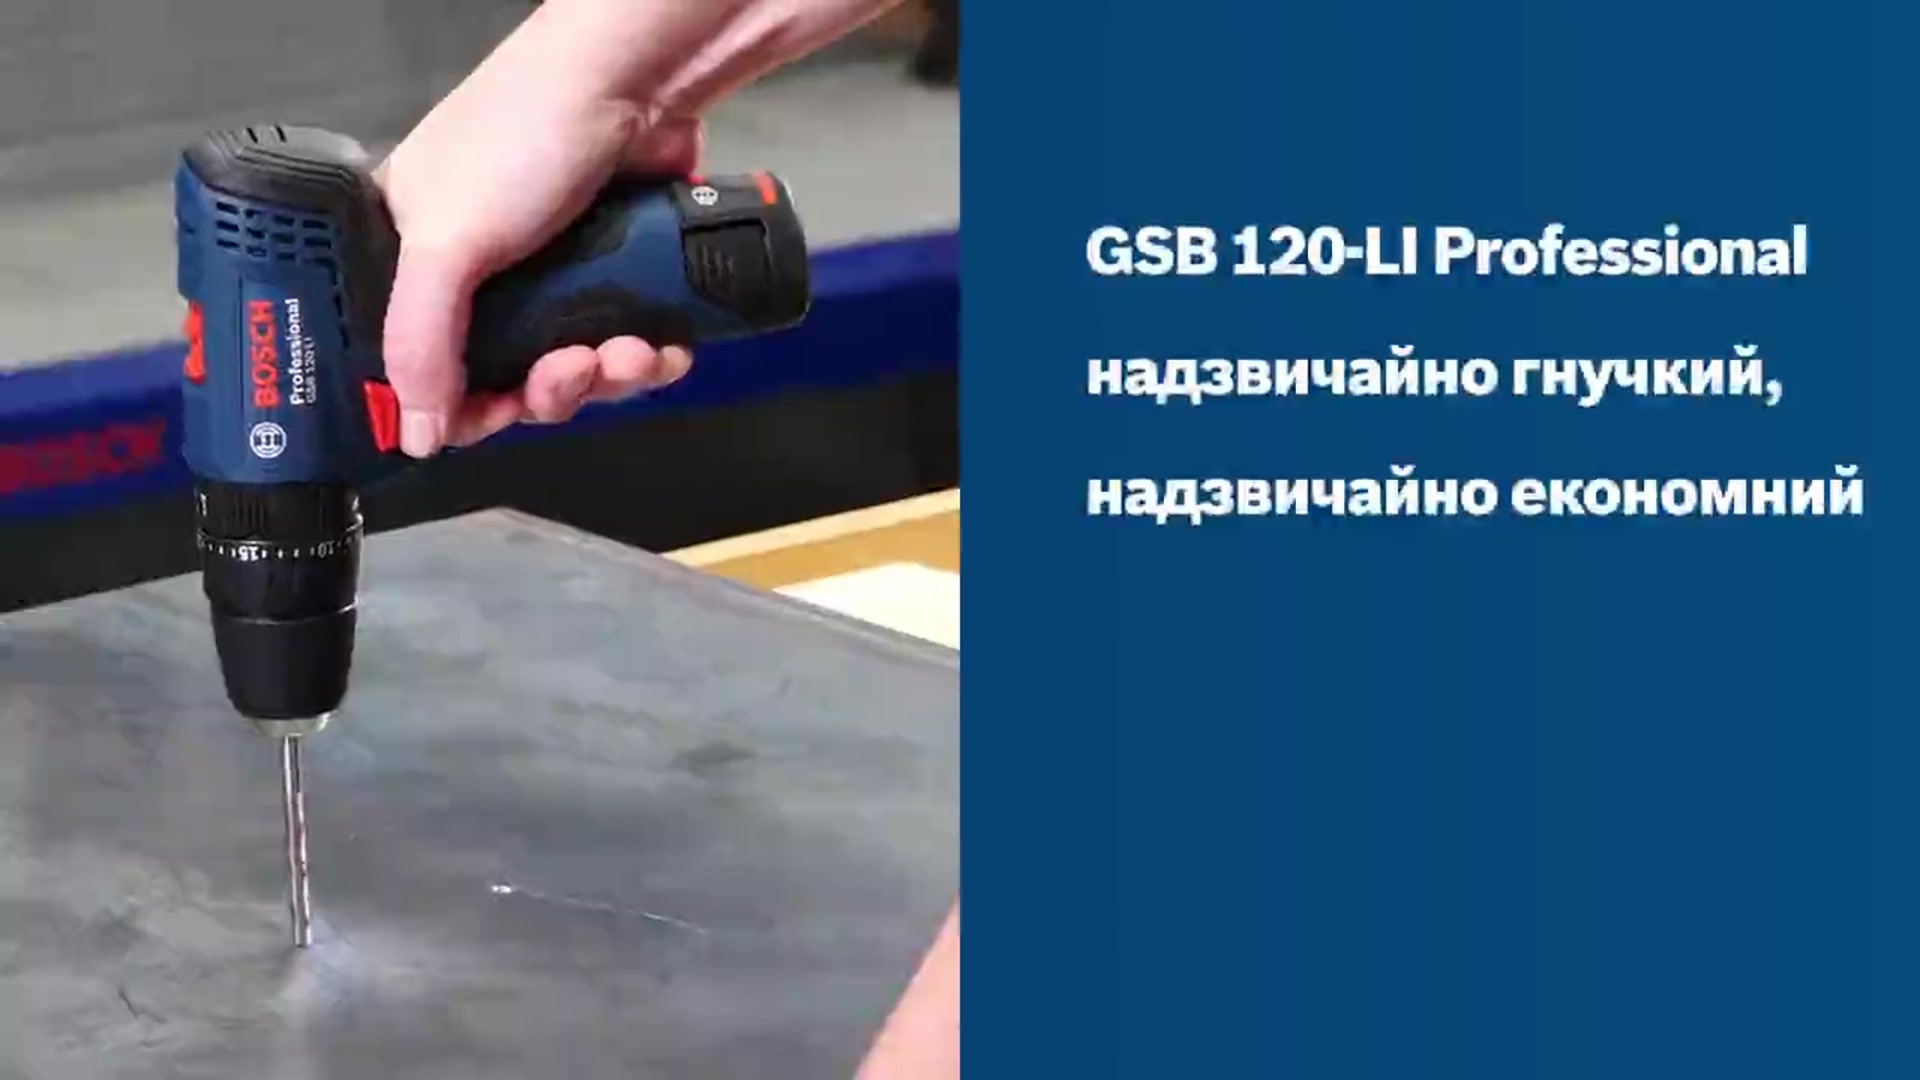 GSB 120-LI